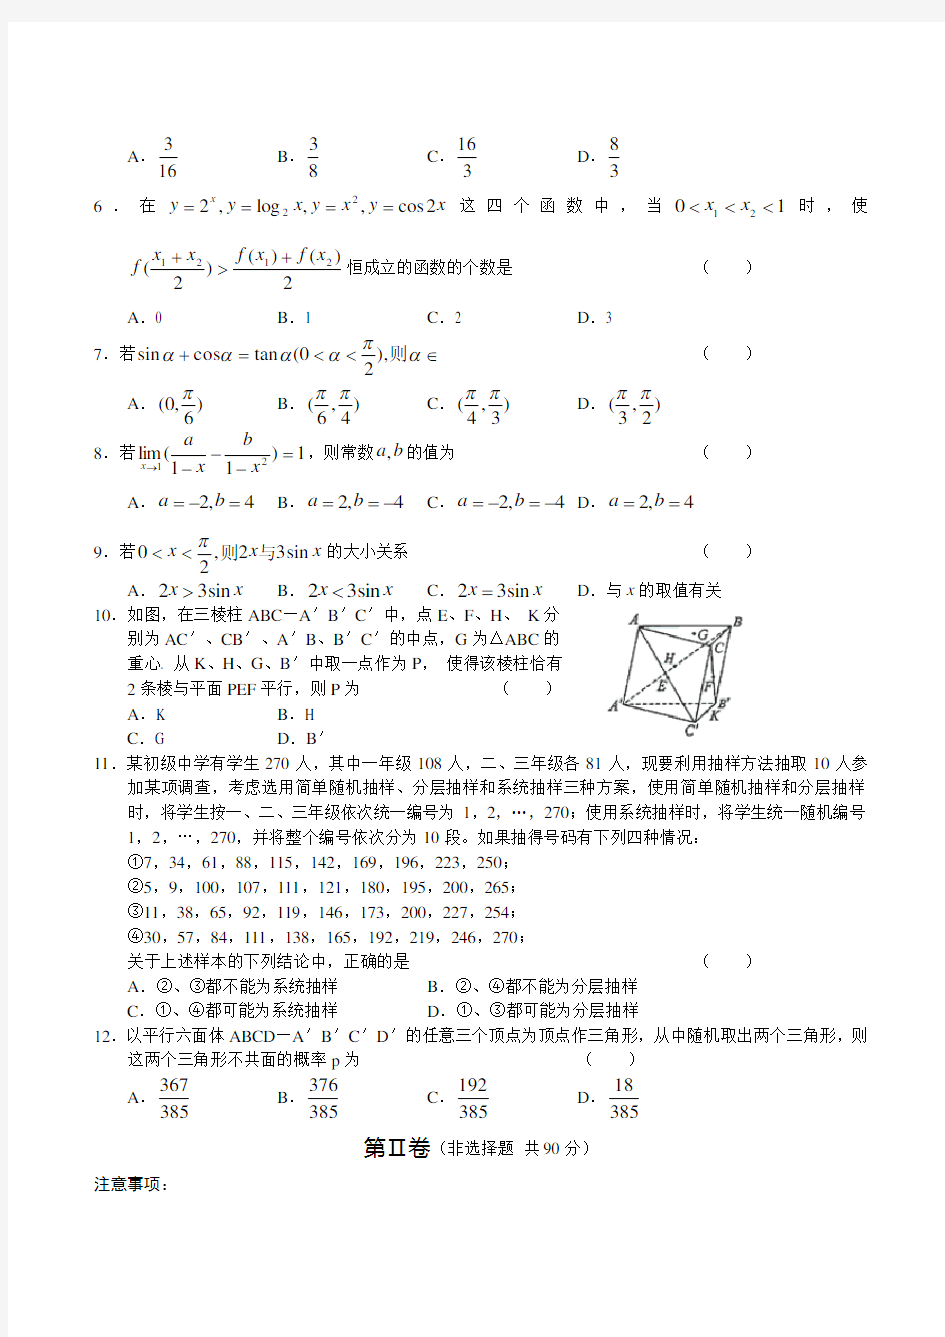 2005年湖北省 高考理科数学试题(真题与答案解析)